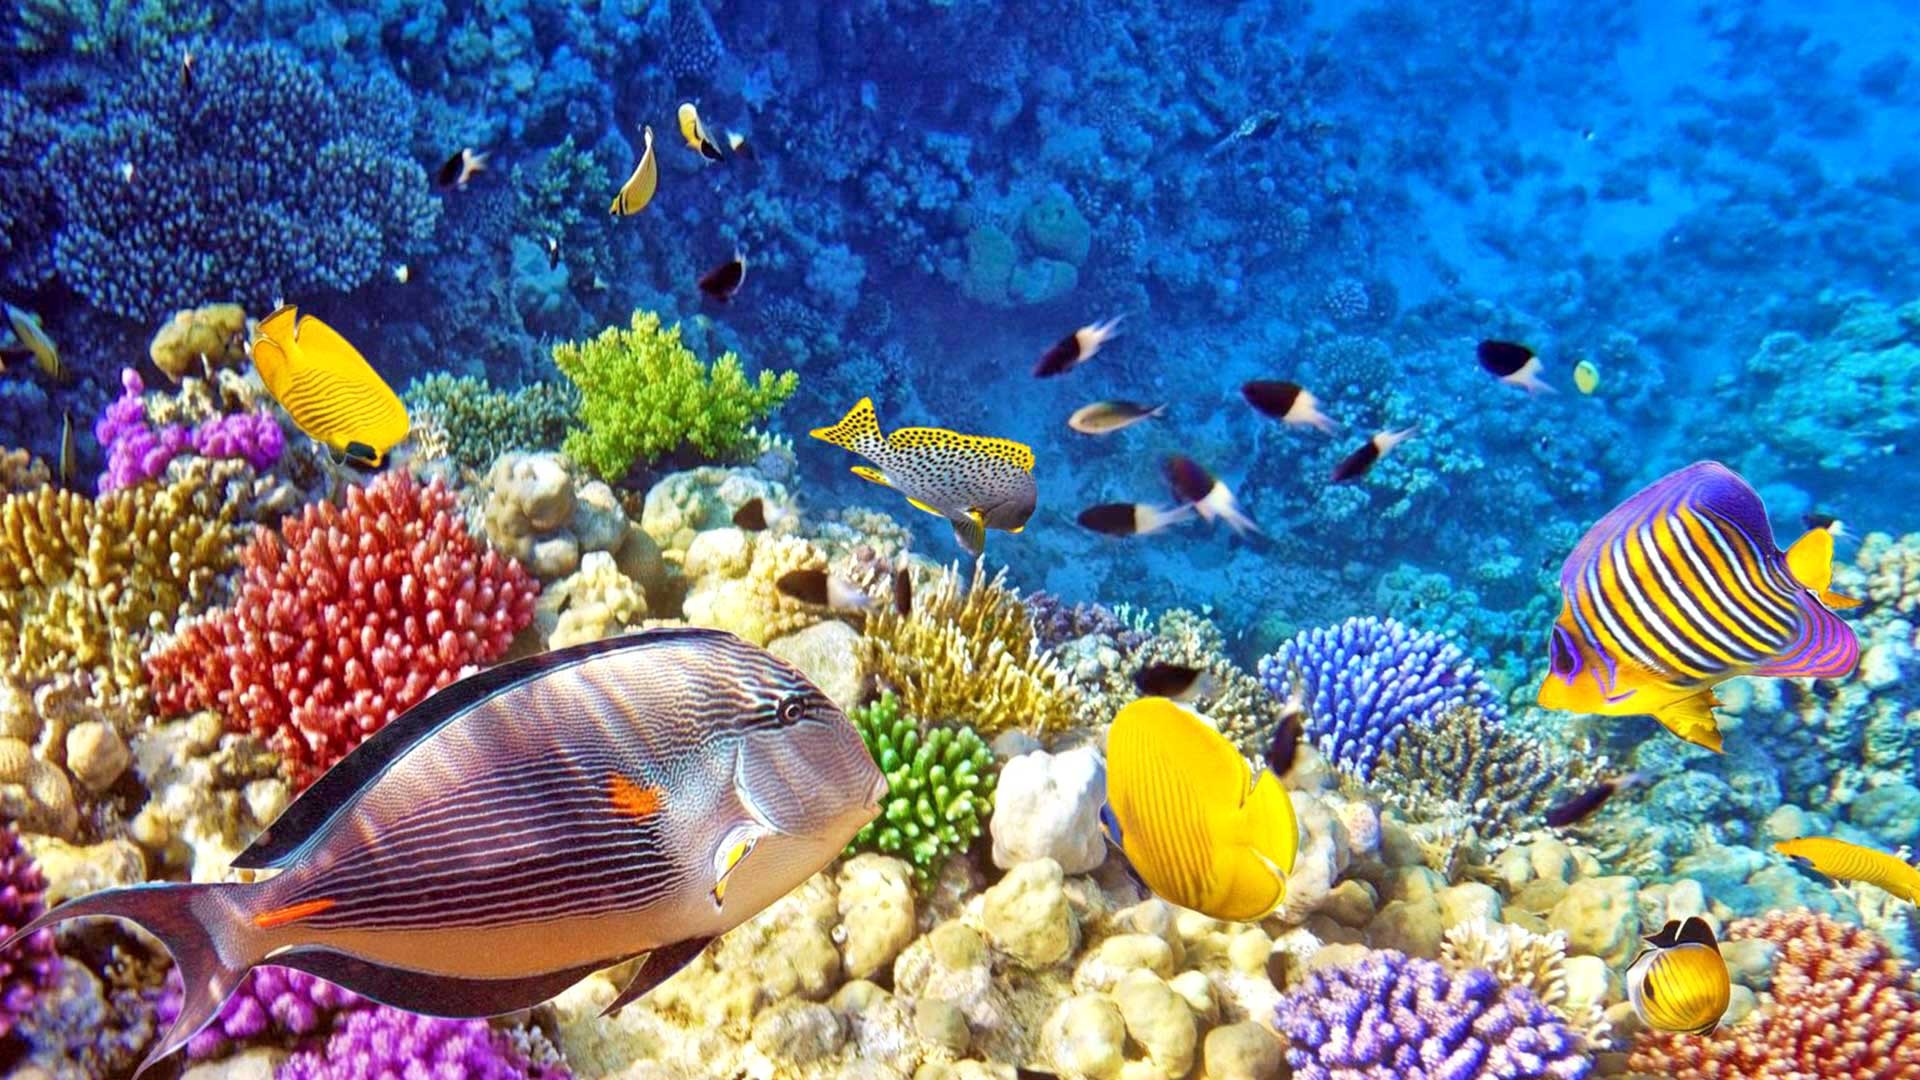 Raja Ampat Underwater Photo Tropical Colorful Fish - Raja Ampat Diving Hd , HD Wallpaper & Backgrounds